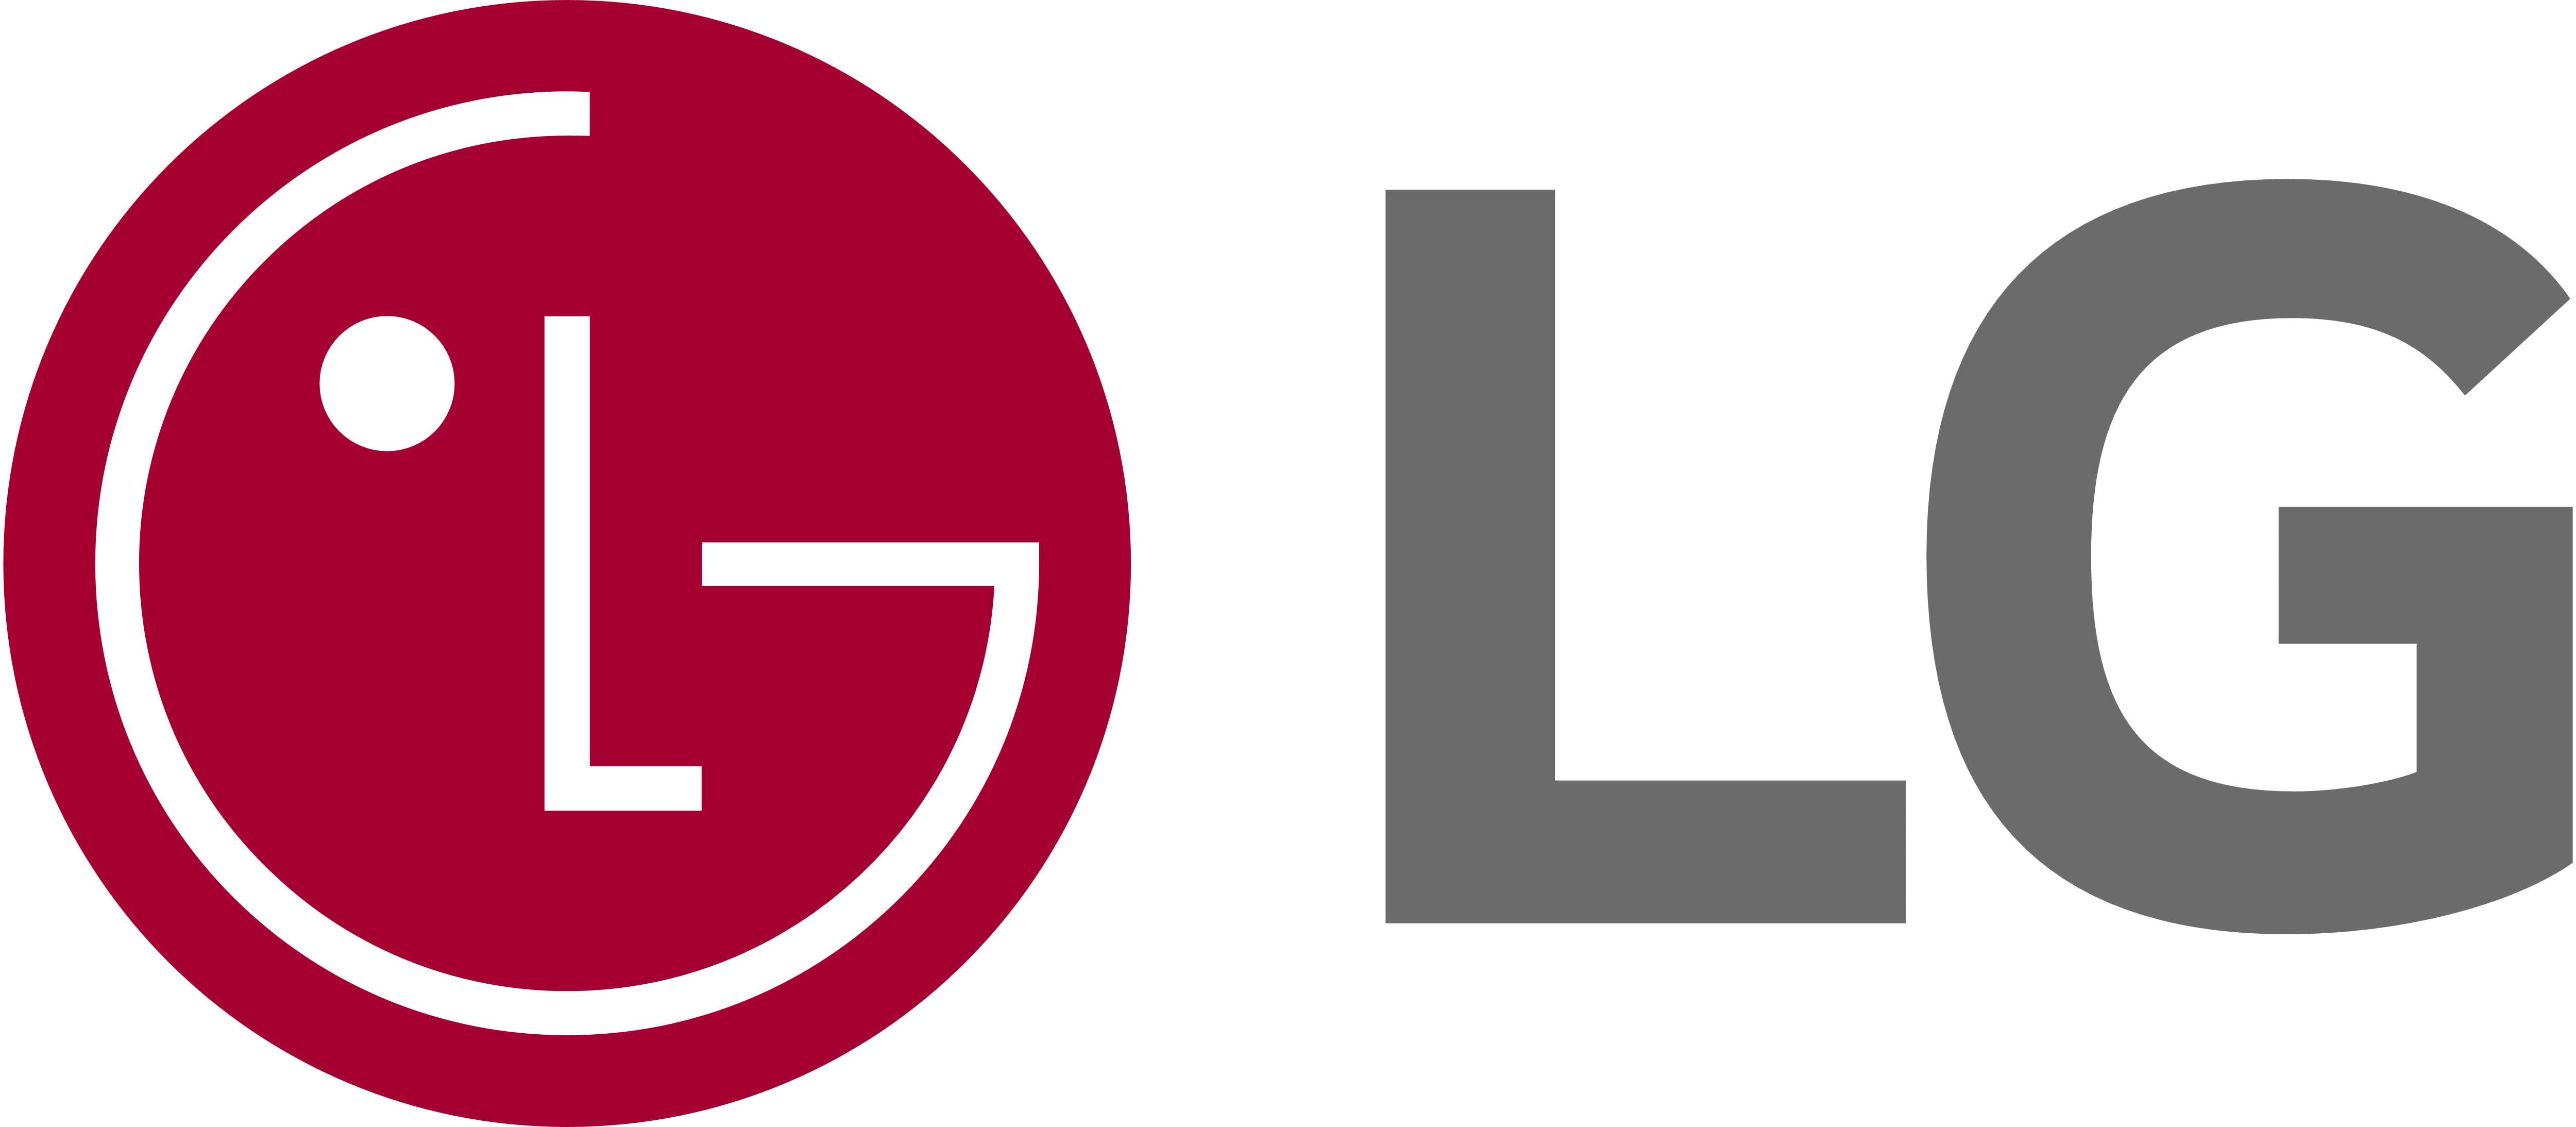 LG Dryer Specialist, GE Dryer Repair